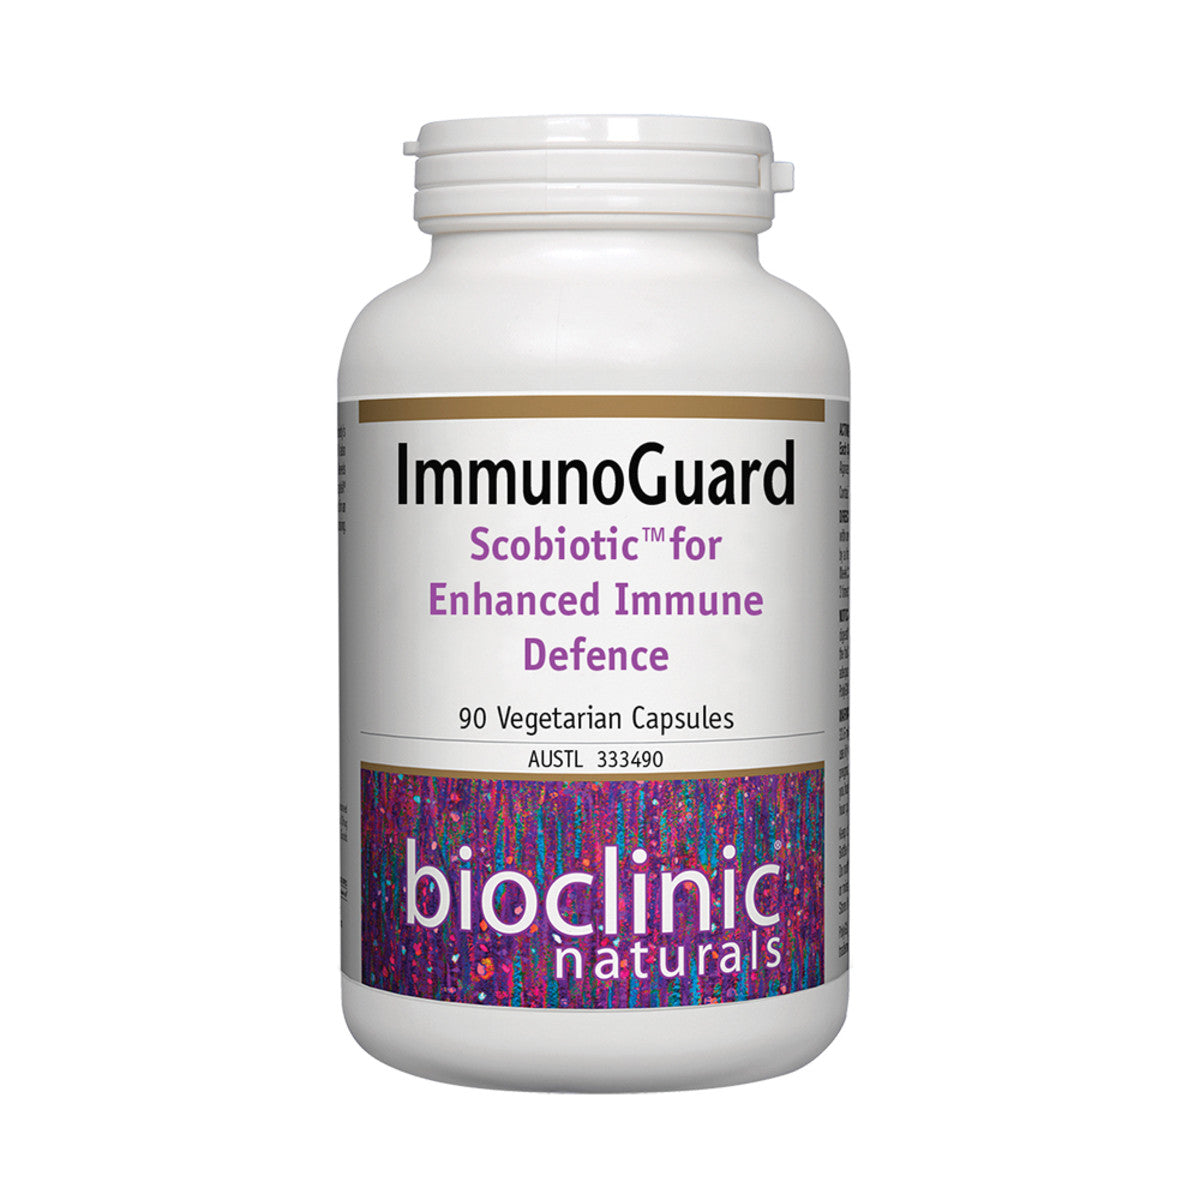 Bioclinic Naturals - ImmunoGuard